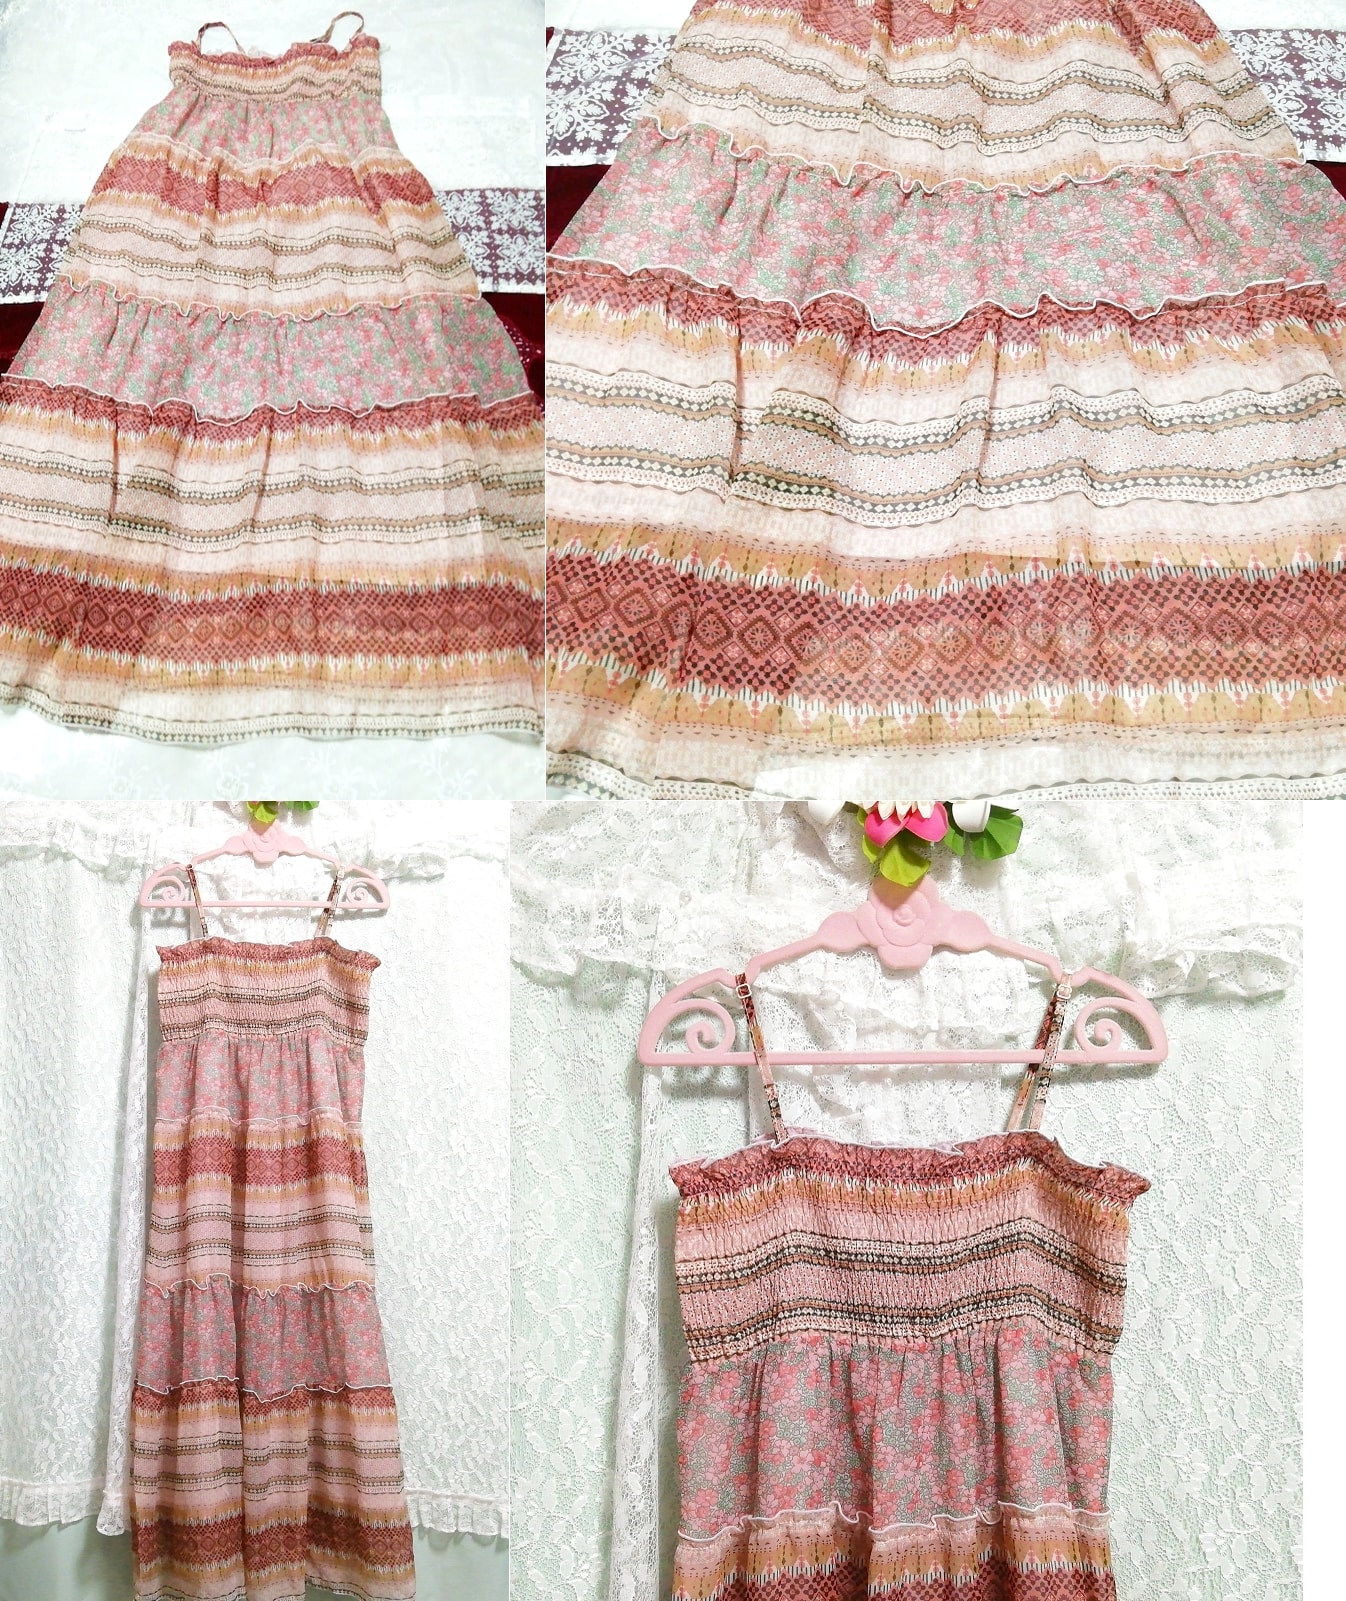 핑크 브라운 플로럴 패턴 네글리제 나이트가운 캐미솔 맥시 드레스, 롱 스커트, l 사이즈